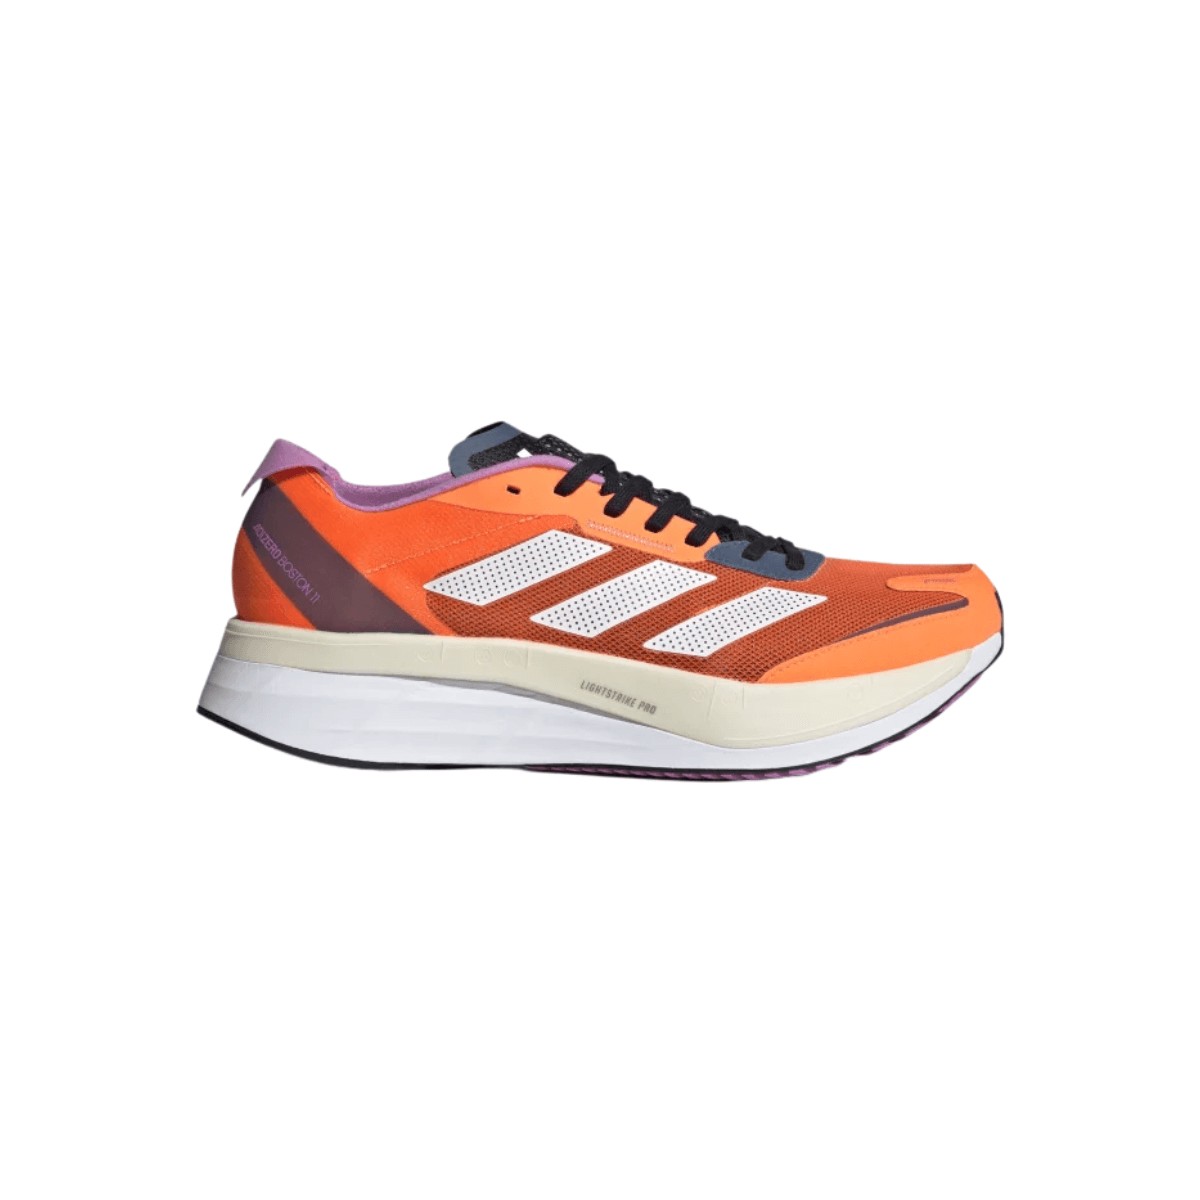 Adidas Adizero Boston 11 Shoes Orange Lilac AW22, Size UK 8